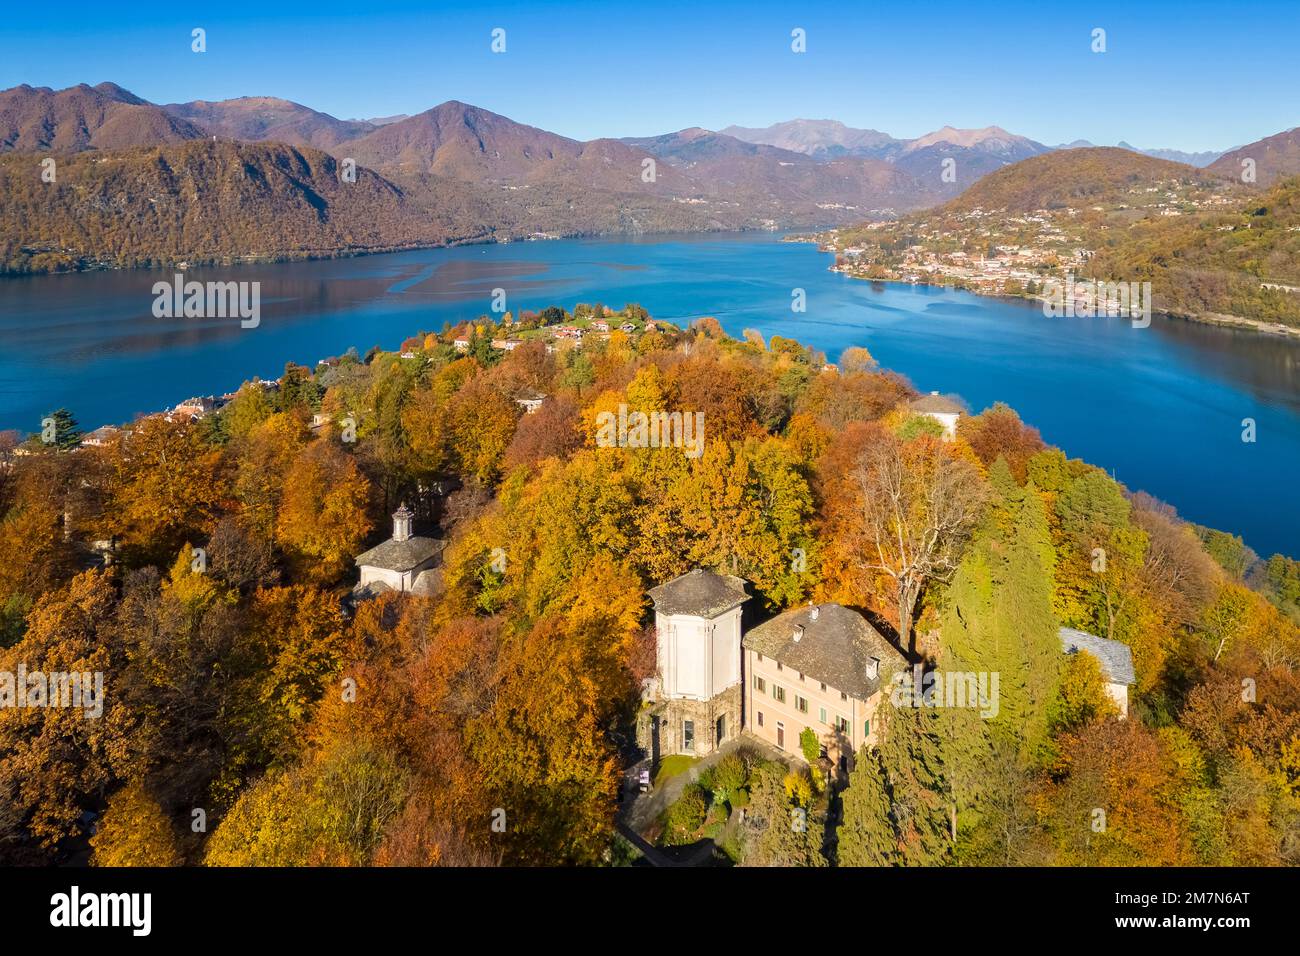 Vue aérienne des chapelles du mont Sacro d'Orta sur le lac d'Orta en automne. Lac Orta, province de Novara, Piémont, Italie. Banque D'Images